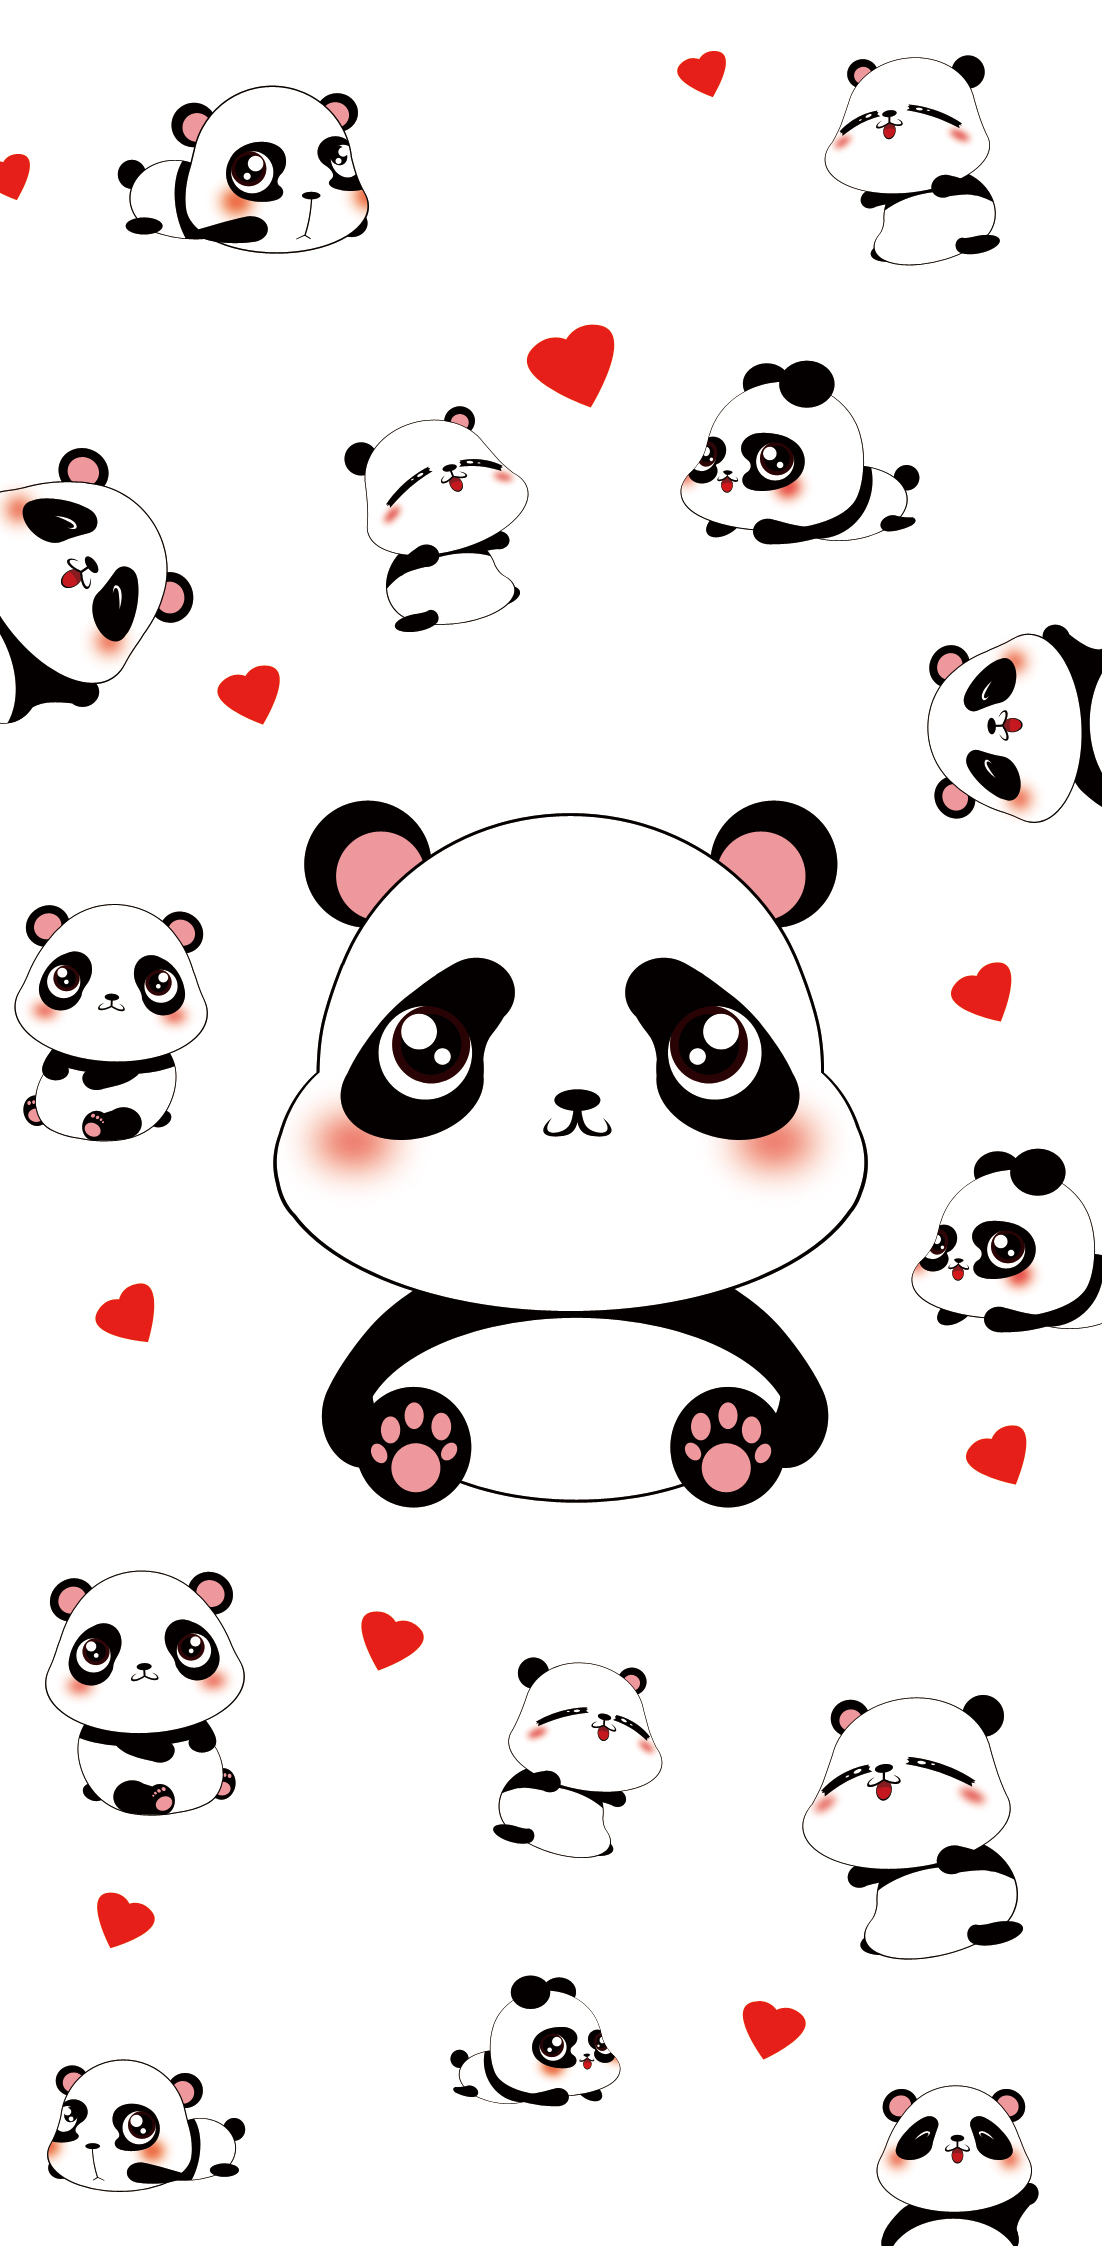 手机壳插画,很多客户也是很喜欢熊猫,我也设计一款萌萌的熊猫